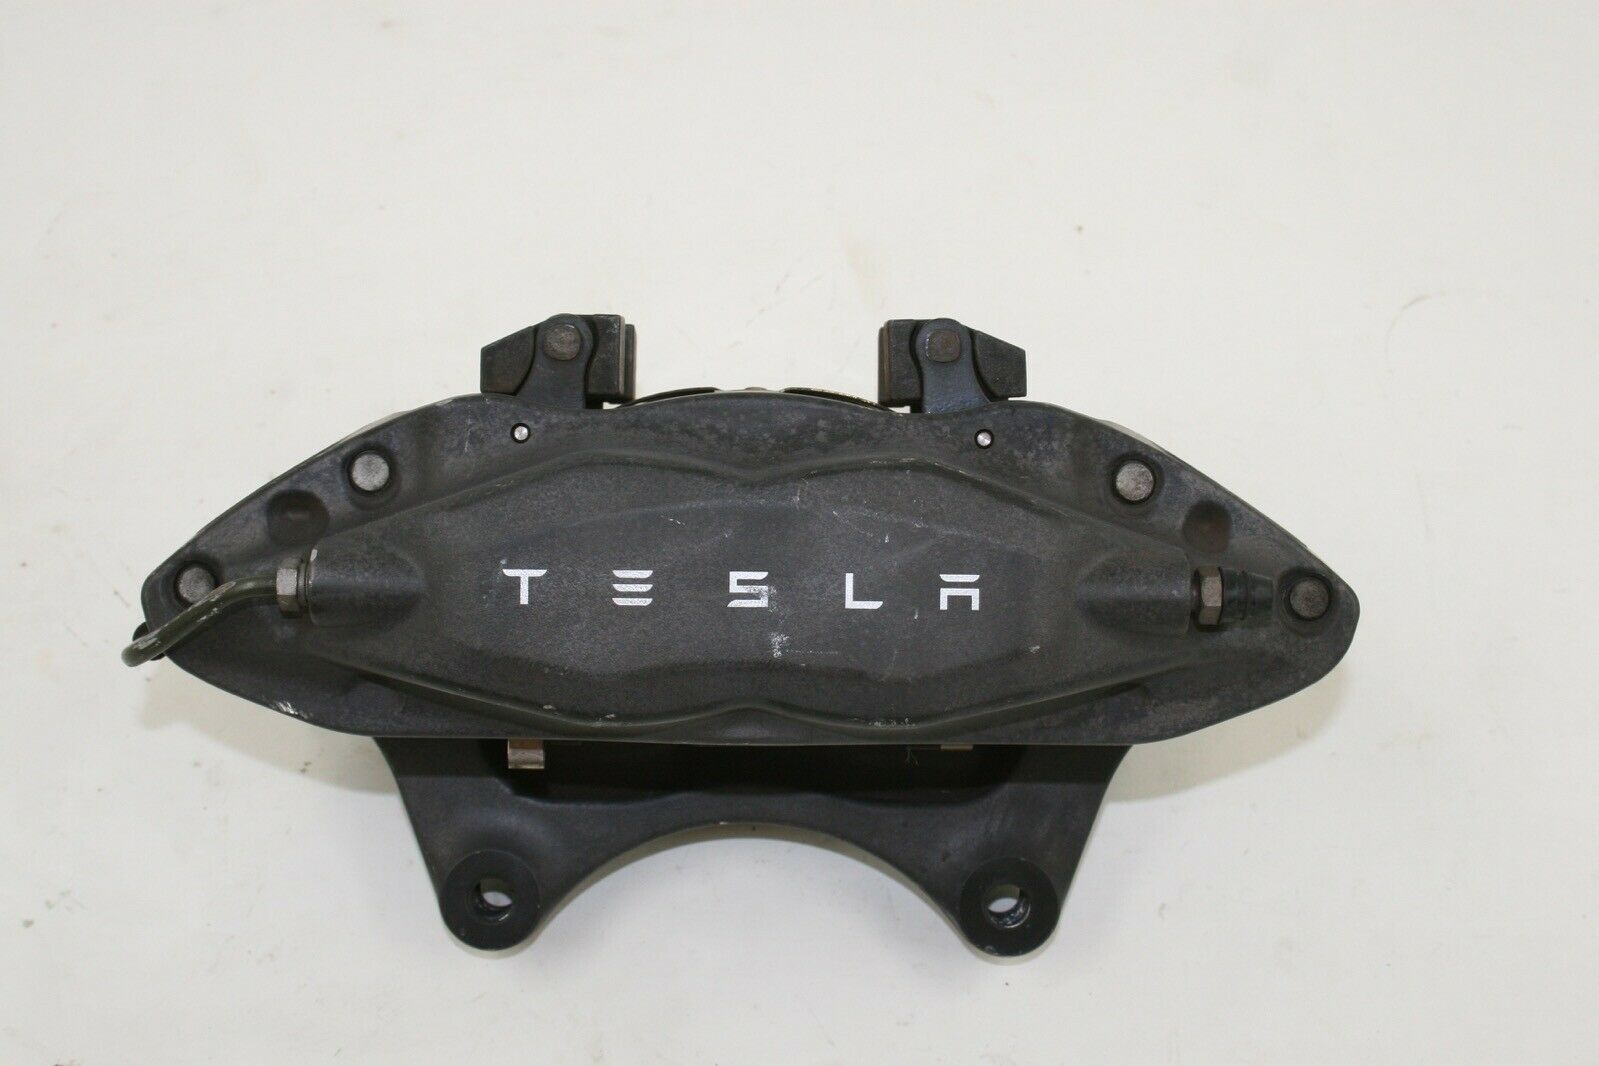 Tesla Model S (2012-2017) Oem Right Front Brembo Brake Caliper # 1003161-00-d